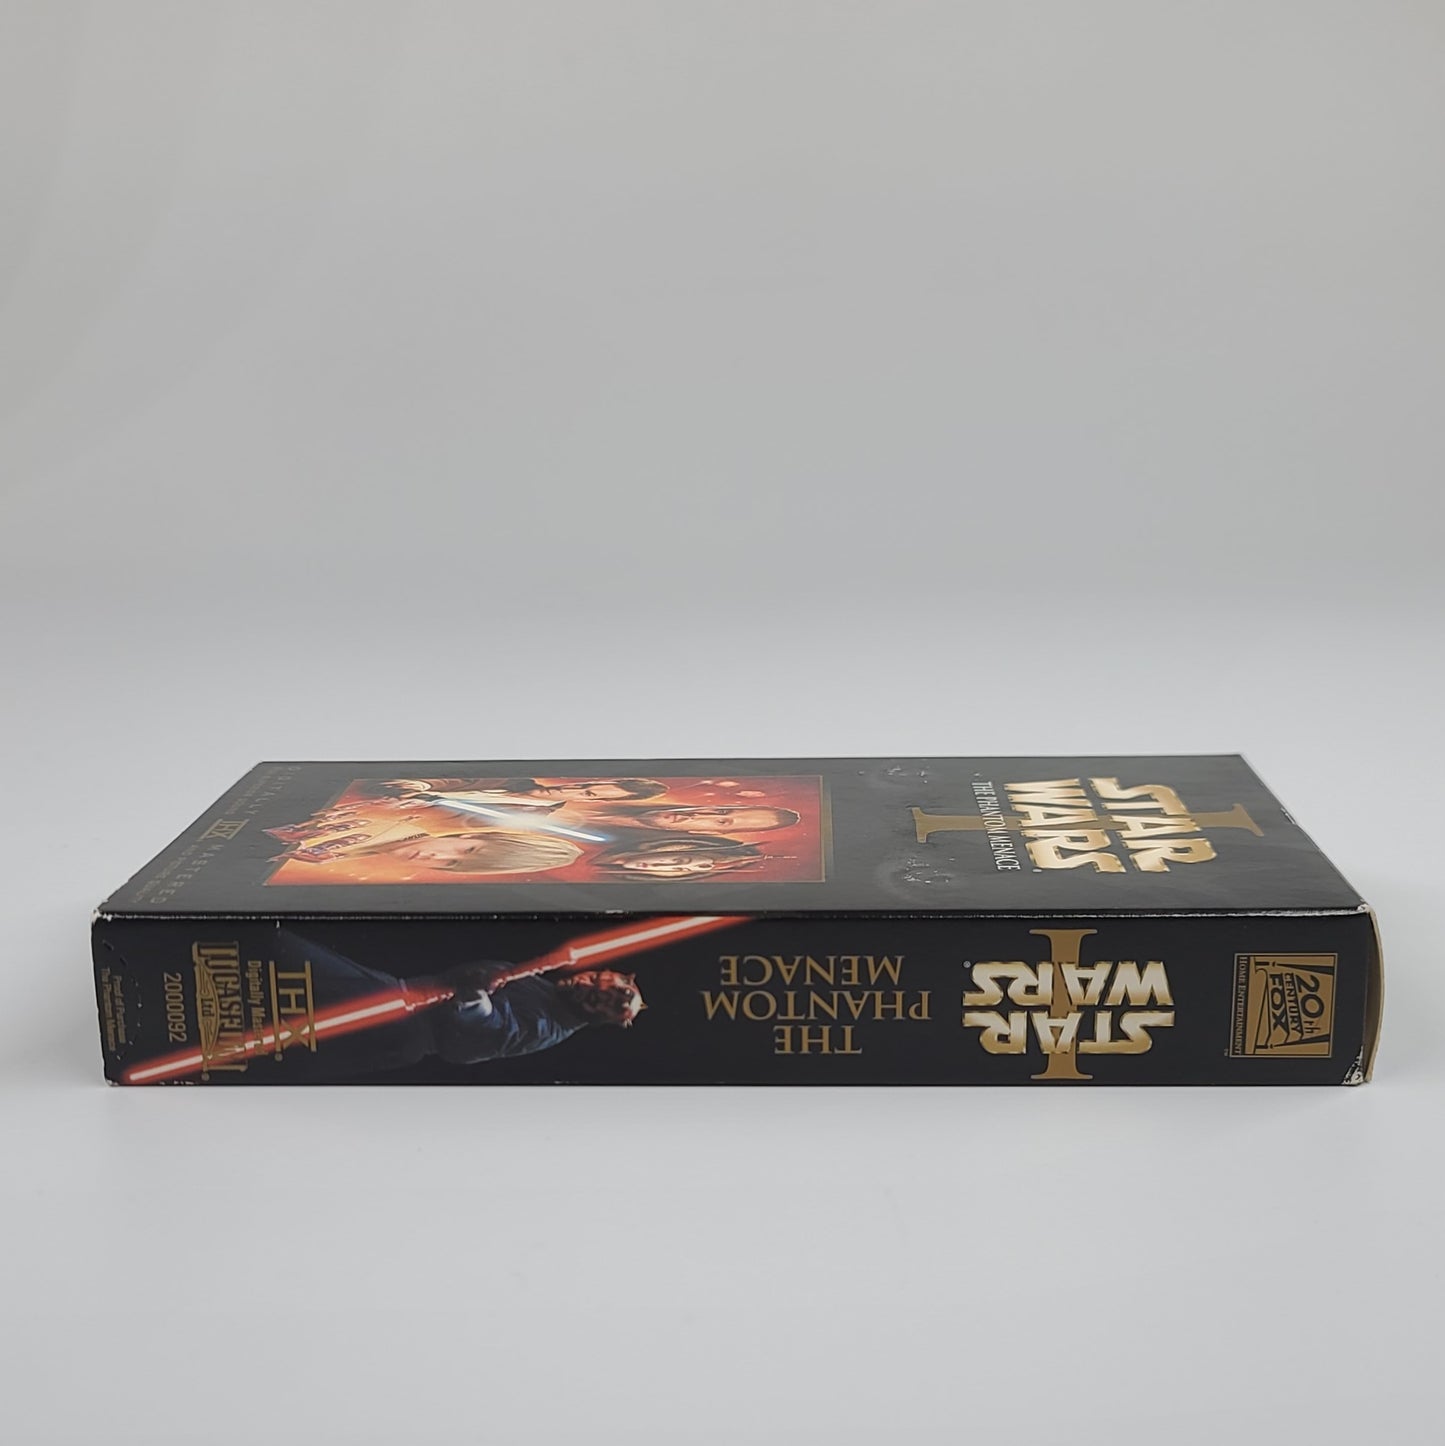 'Star Wars: The Phantom Menace' VHS